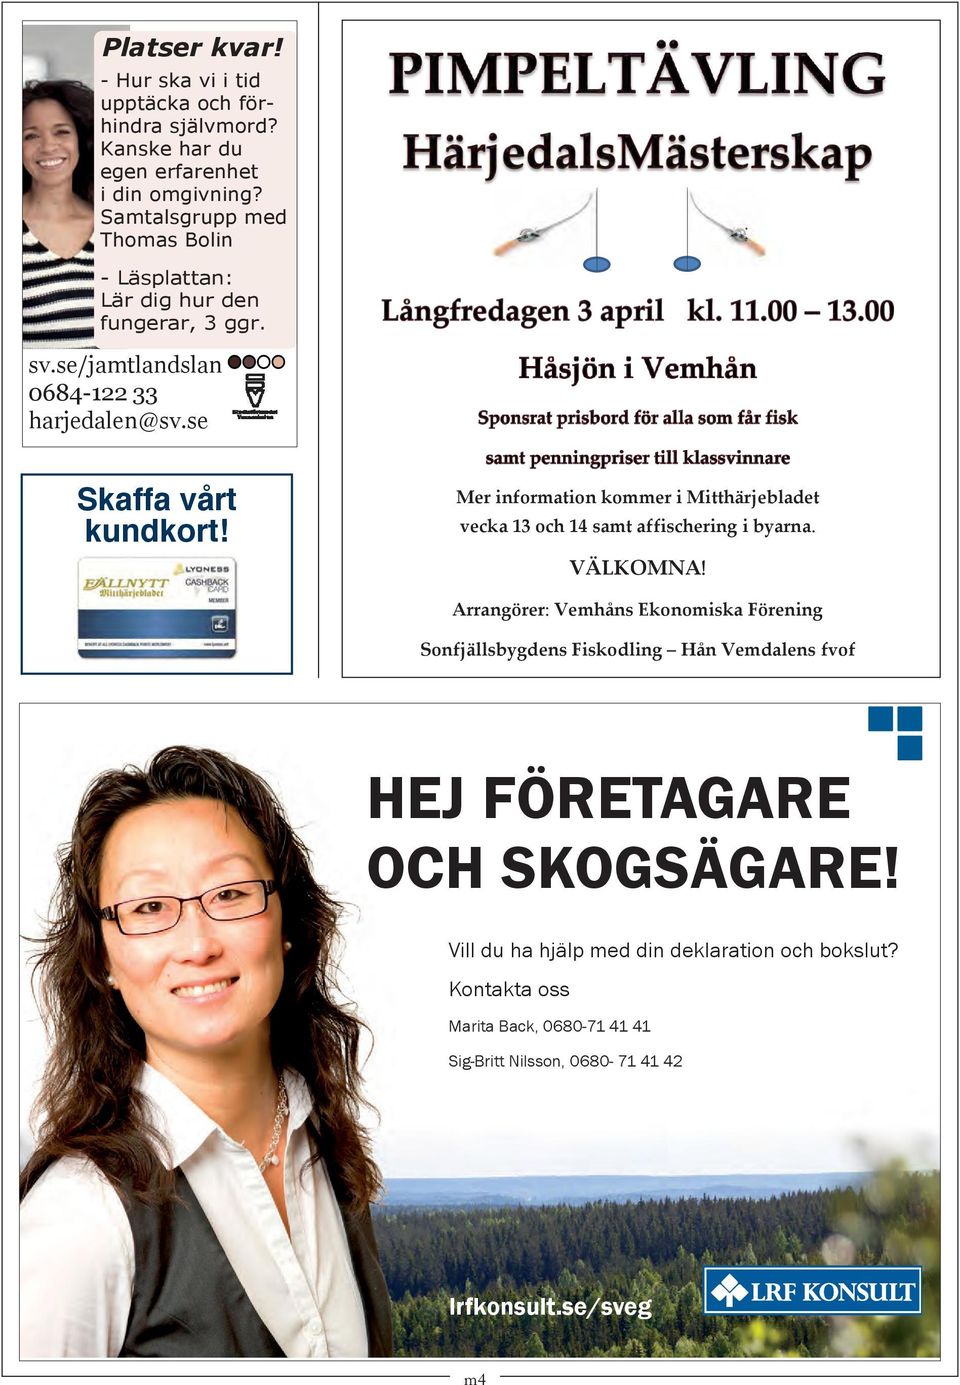 Mer information kommer i Mitthärjebladet vecka 13 och 14 samt affischering i byarna. VÄLKOMNA!